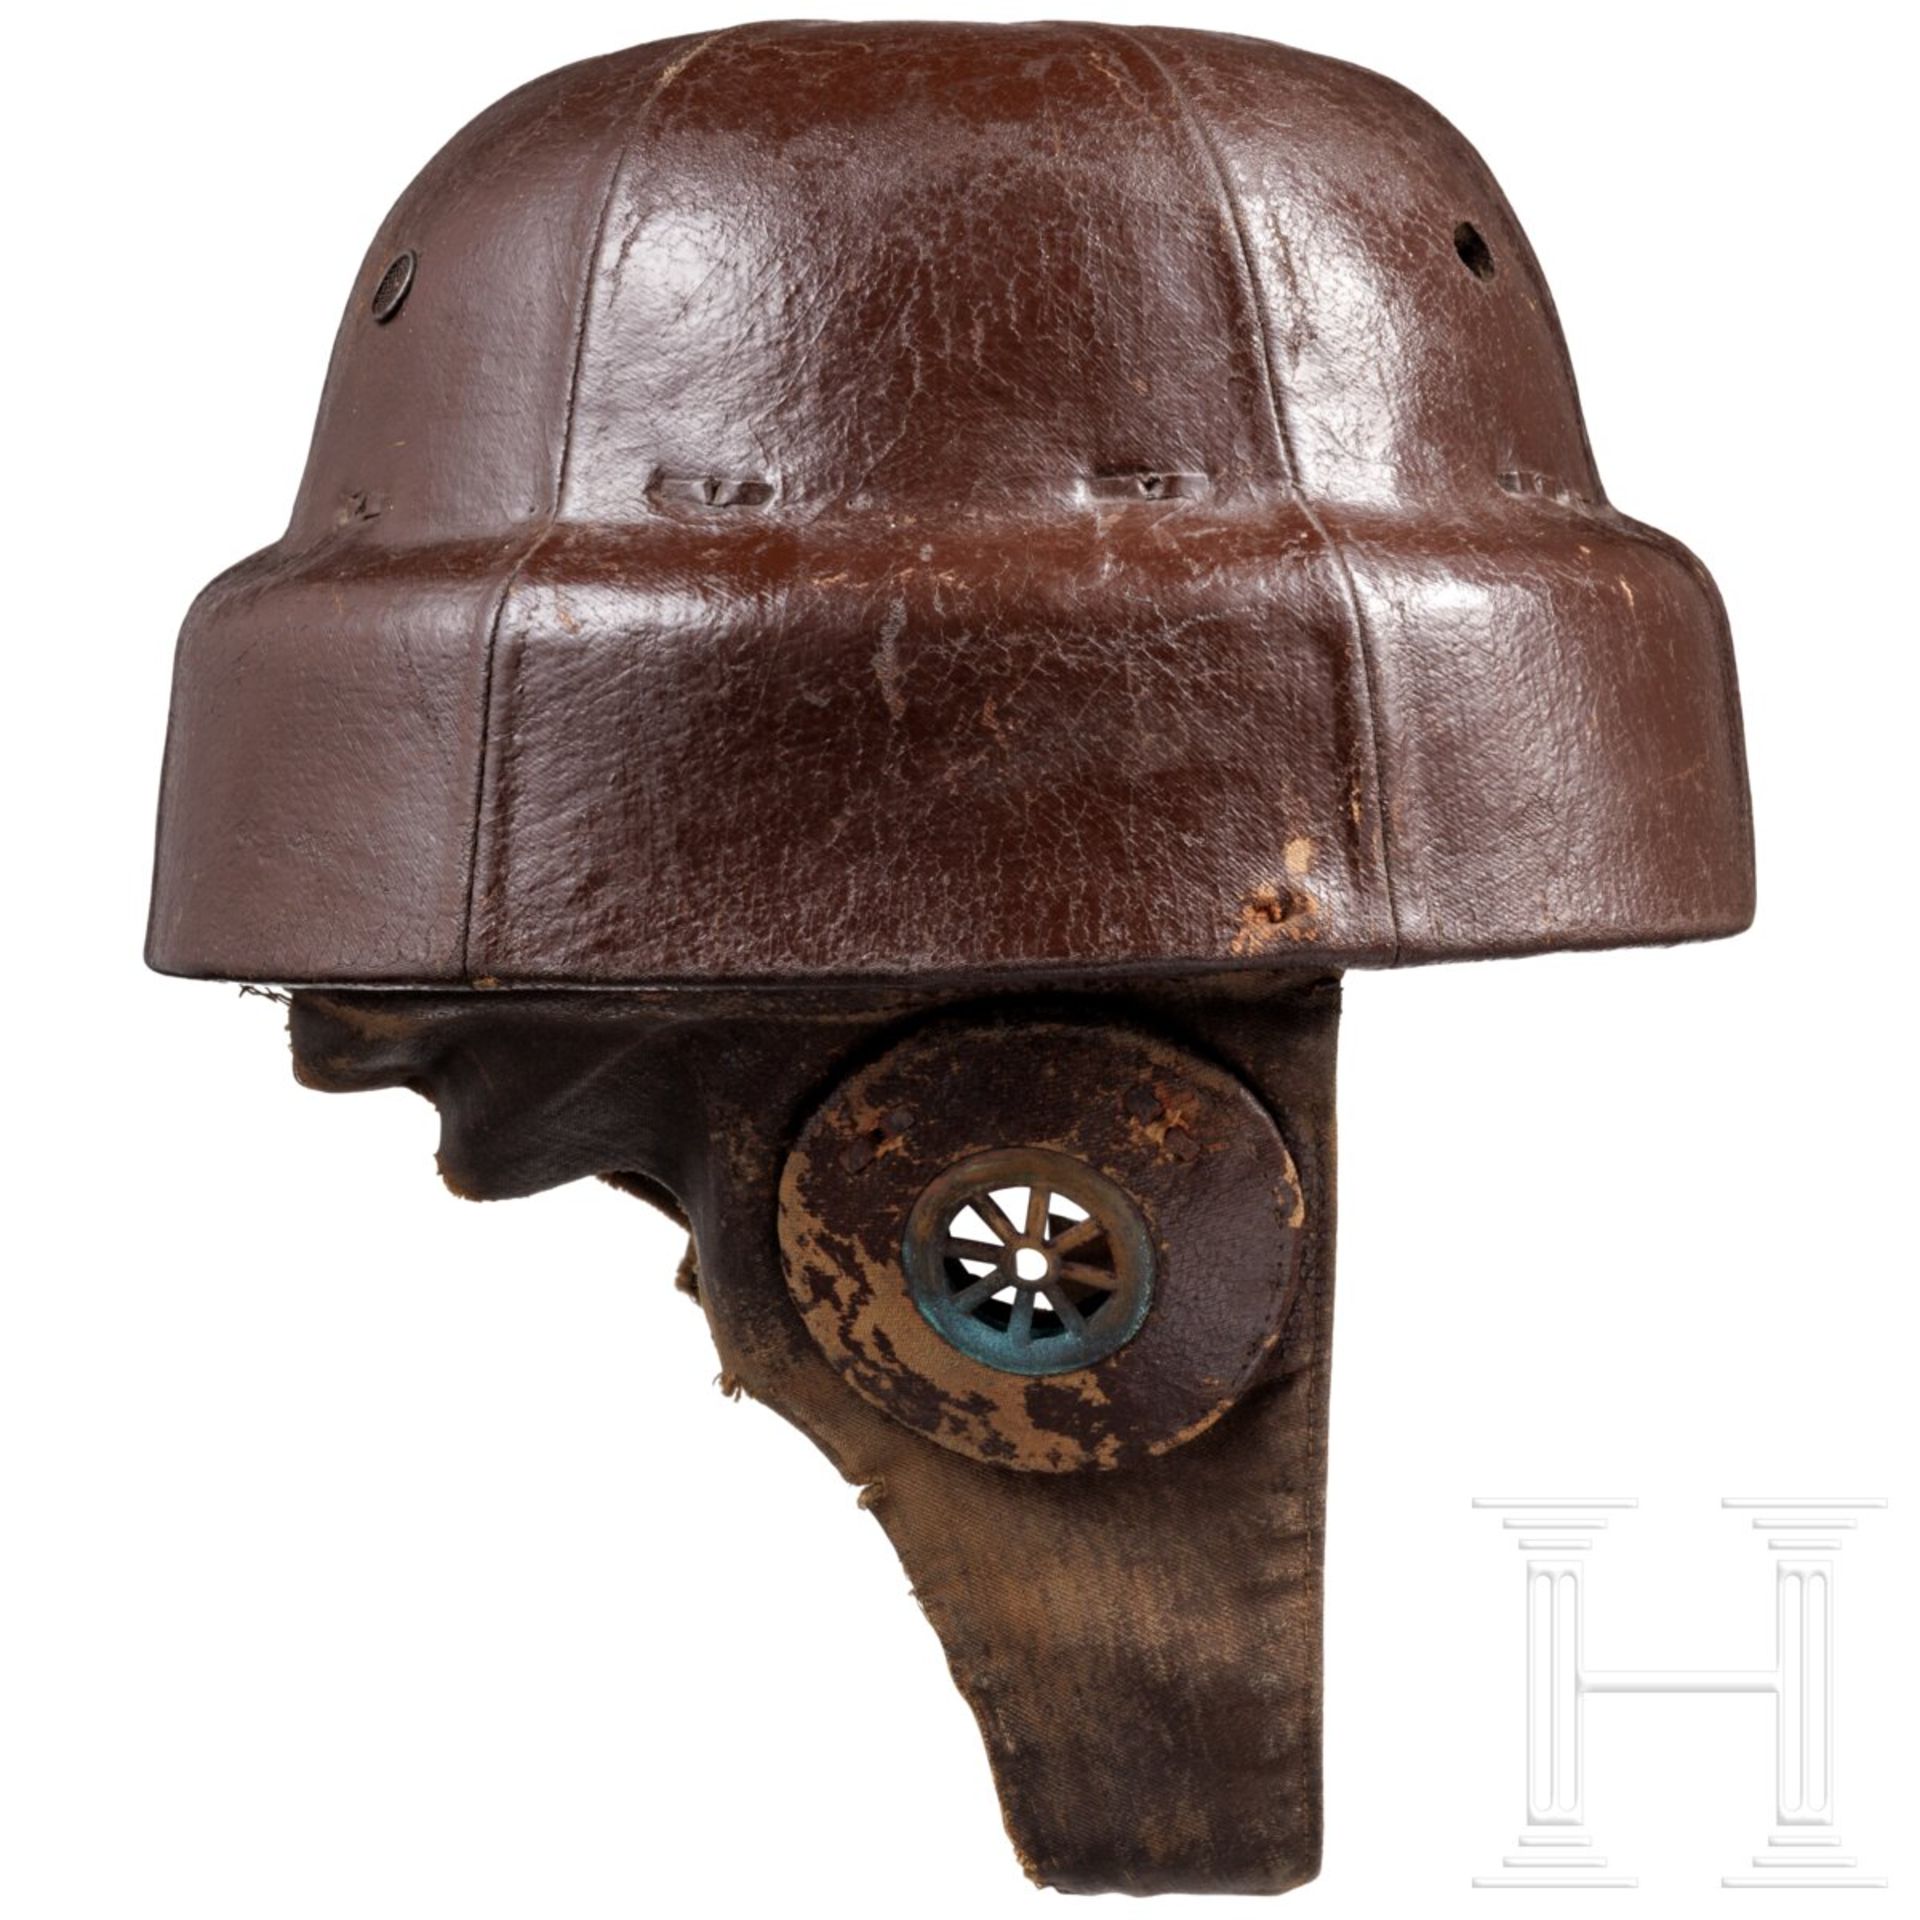 Helm vom Typ "Roold" für alliierte Flieger im 1. Weltkrieg - Image 2 of 6